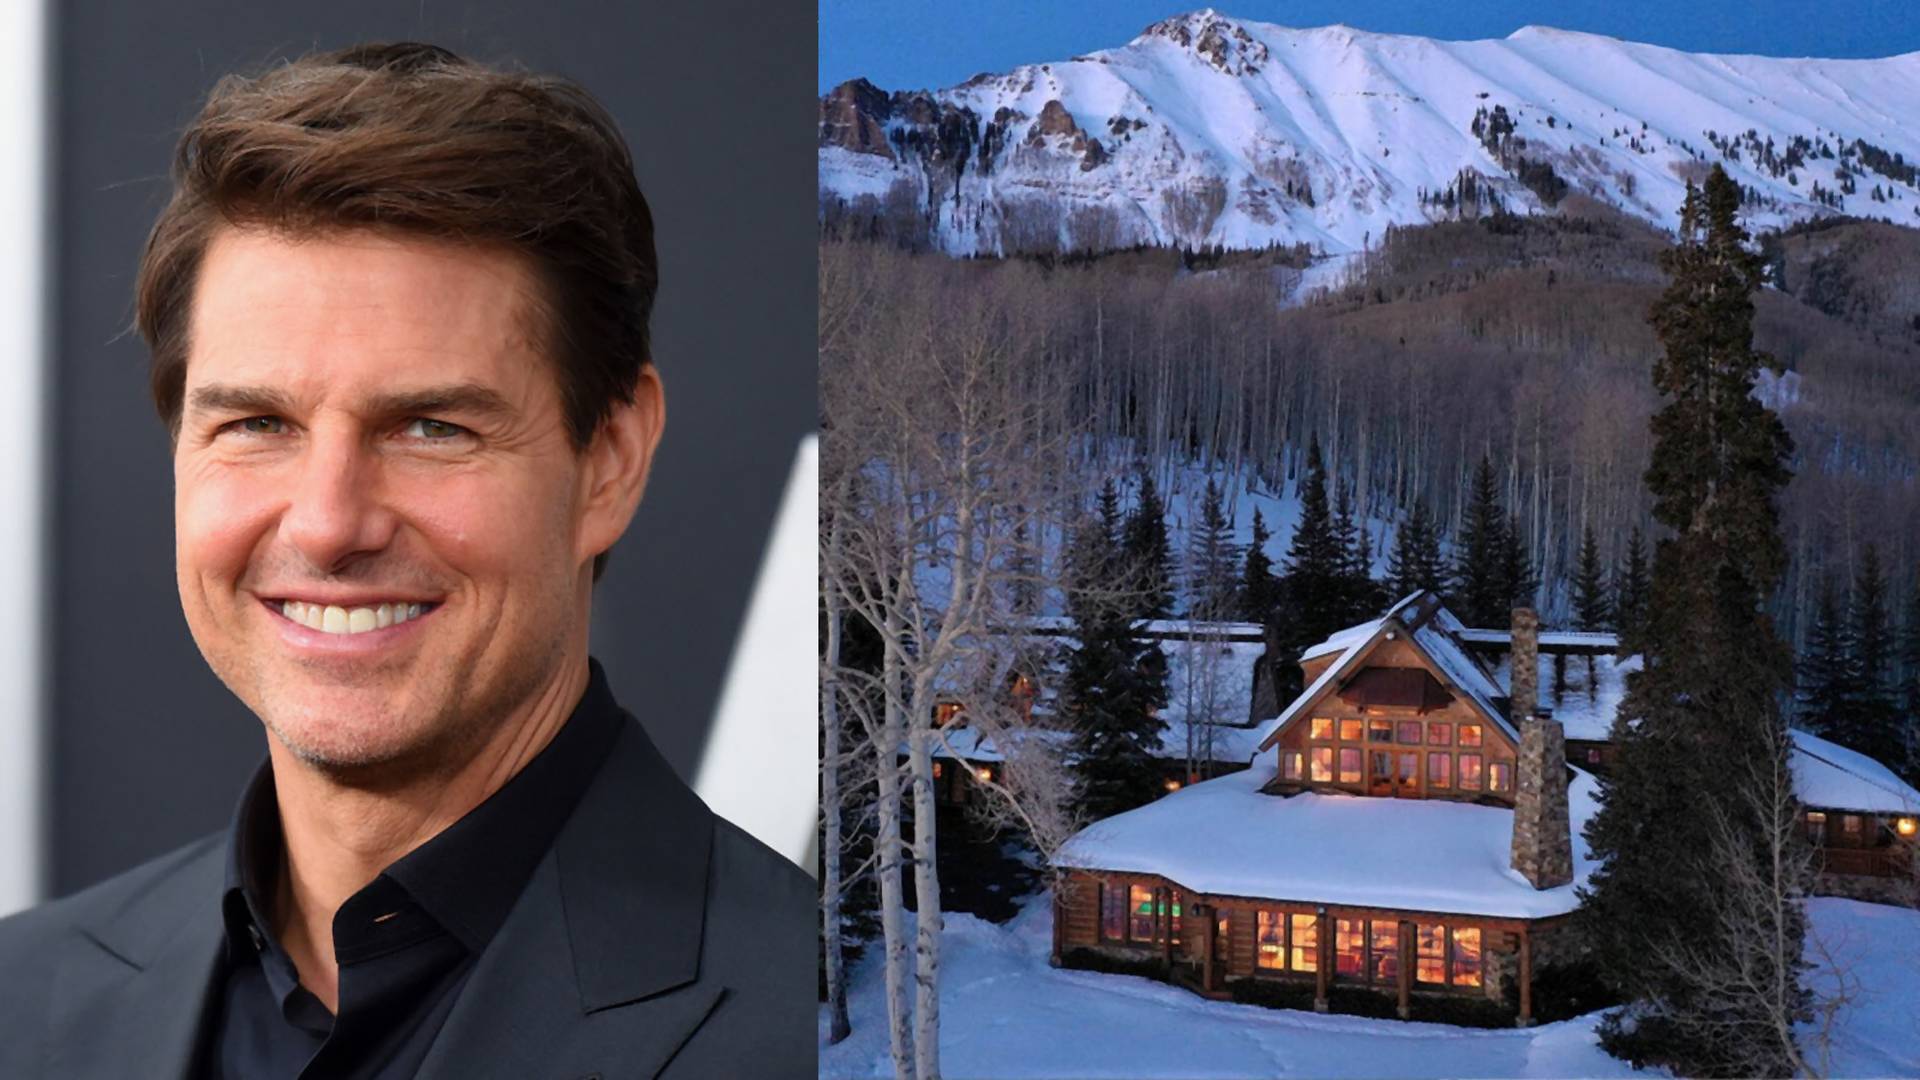 Eladó Tom Cruise coloradói luxusvillája - így néz ki belülről a fényűző palota